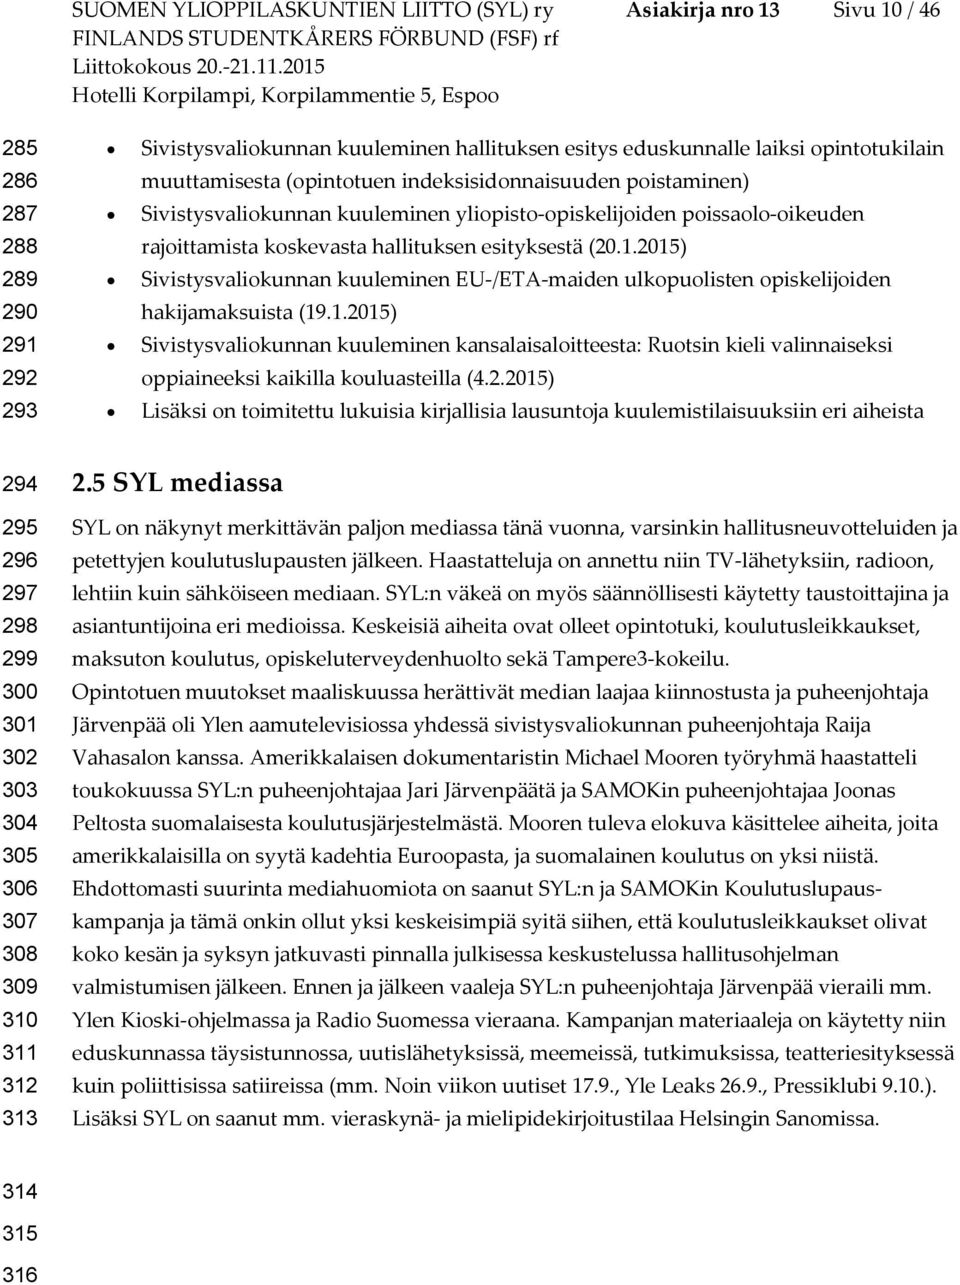 2015) Sivistysvaliokunnan kuuleminen EU-/ETA-maiden ulkopuolisten opiskelijoiden hakijamaksuista (19.1.2015) Sivistysvaliokunnan kuuleminen kansalaisaloitteesta: Ruotsin kieli valinnaiseksi oppiaineeksi kaikilla kouluasteilla (4.